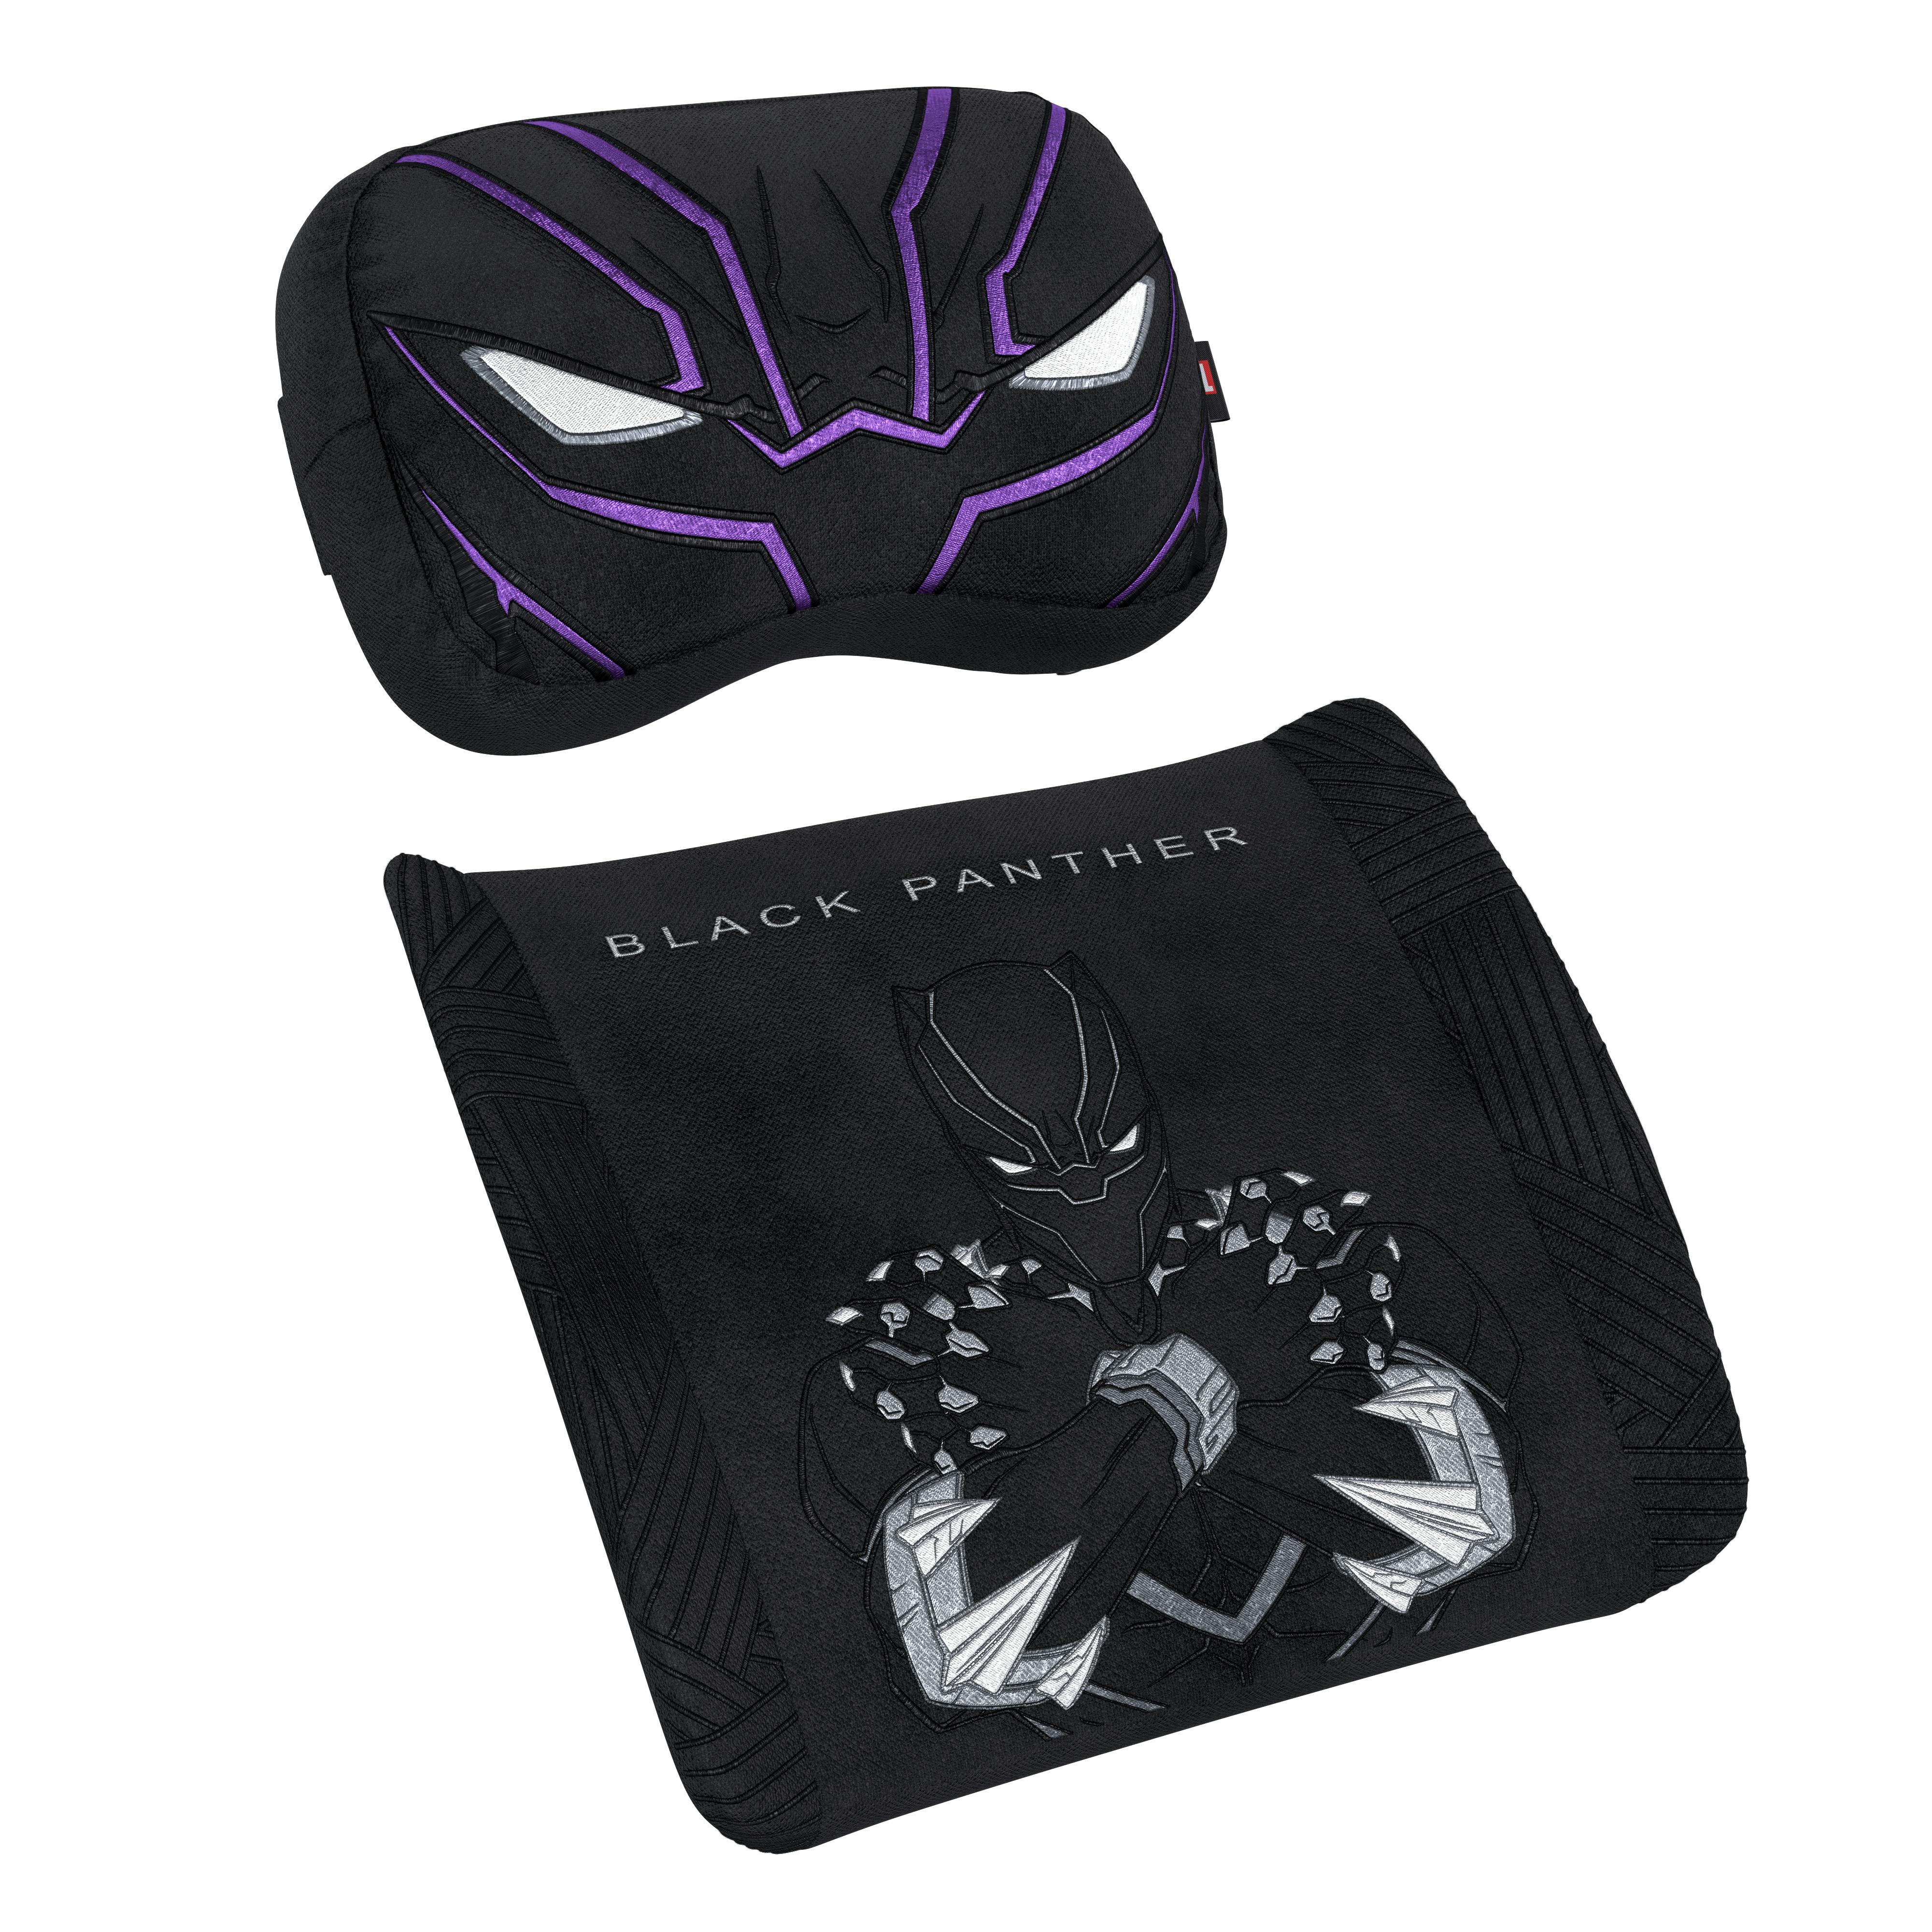 Memory Foam conjunto de almohadas de la edición - Black Panther Edition